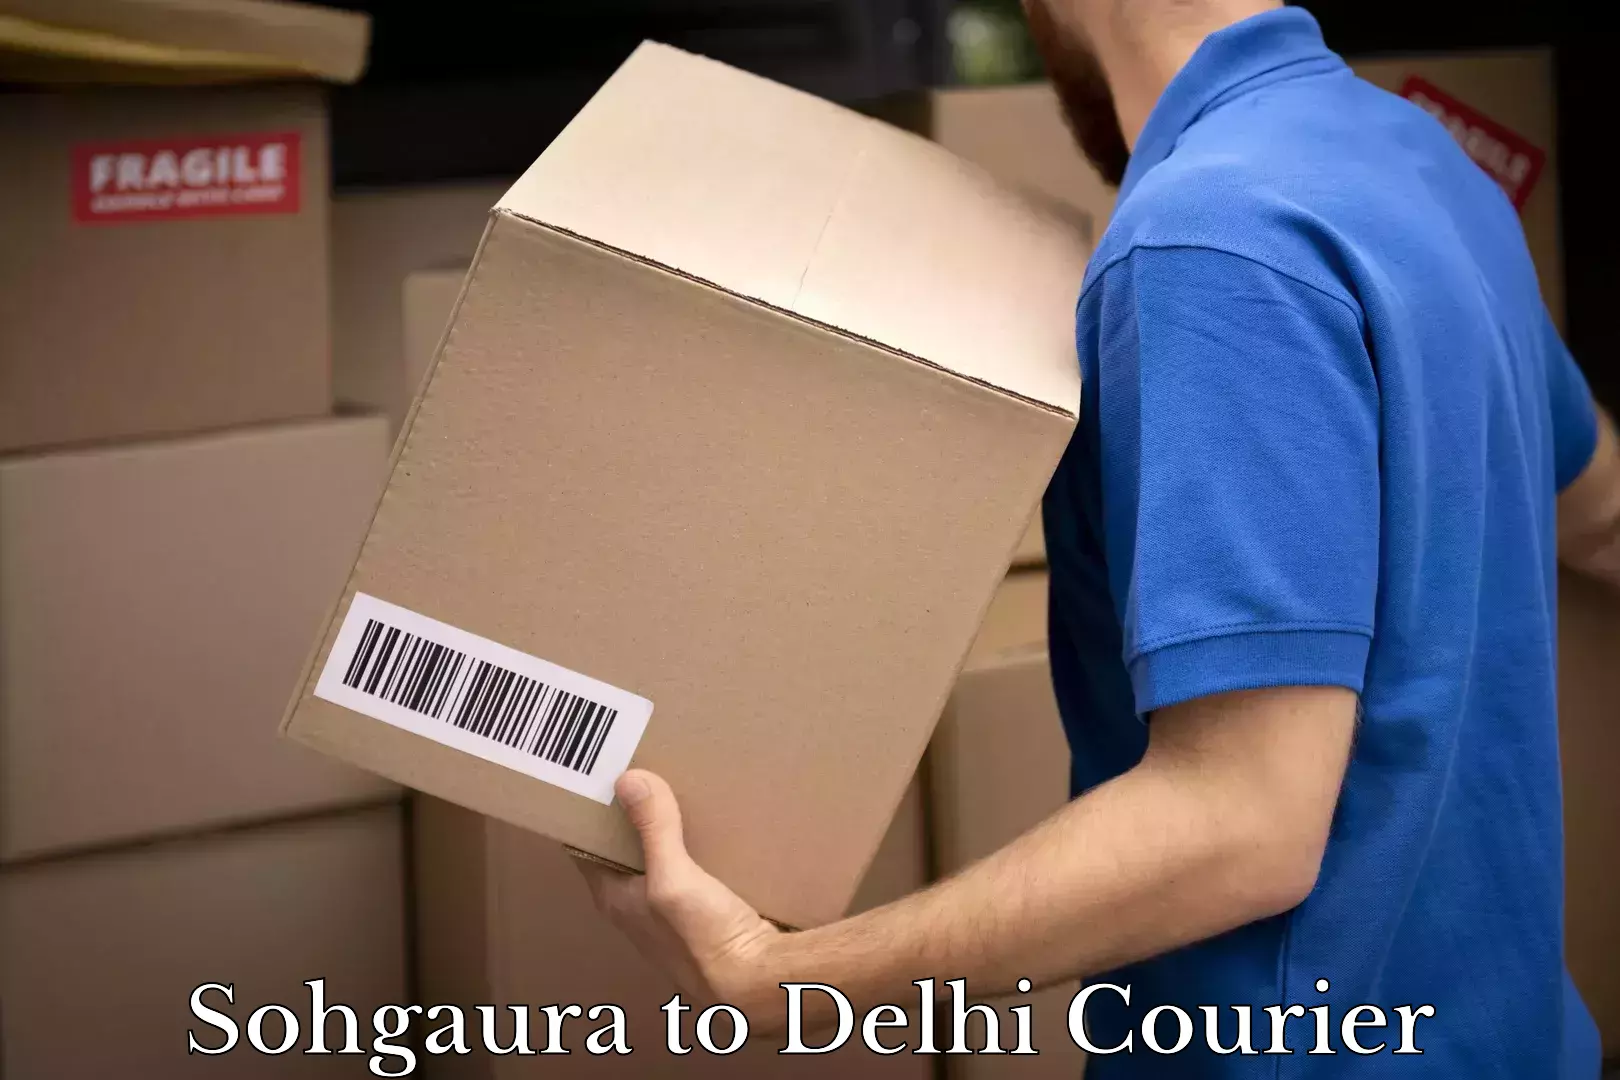 Courier service efficiency Sohgaura to Delhi